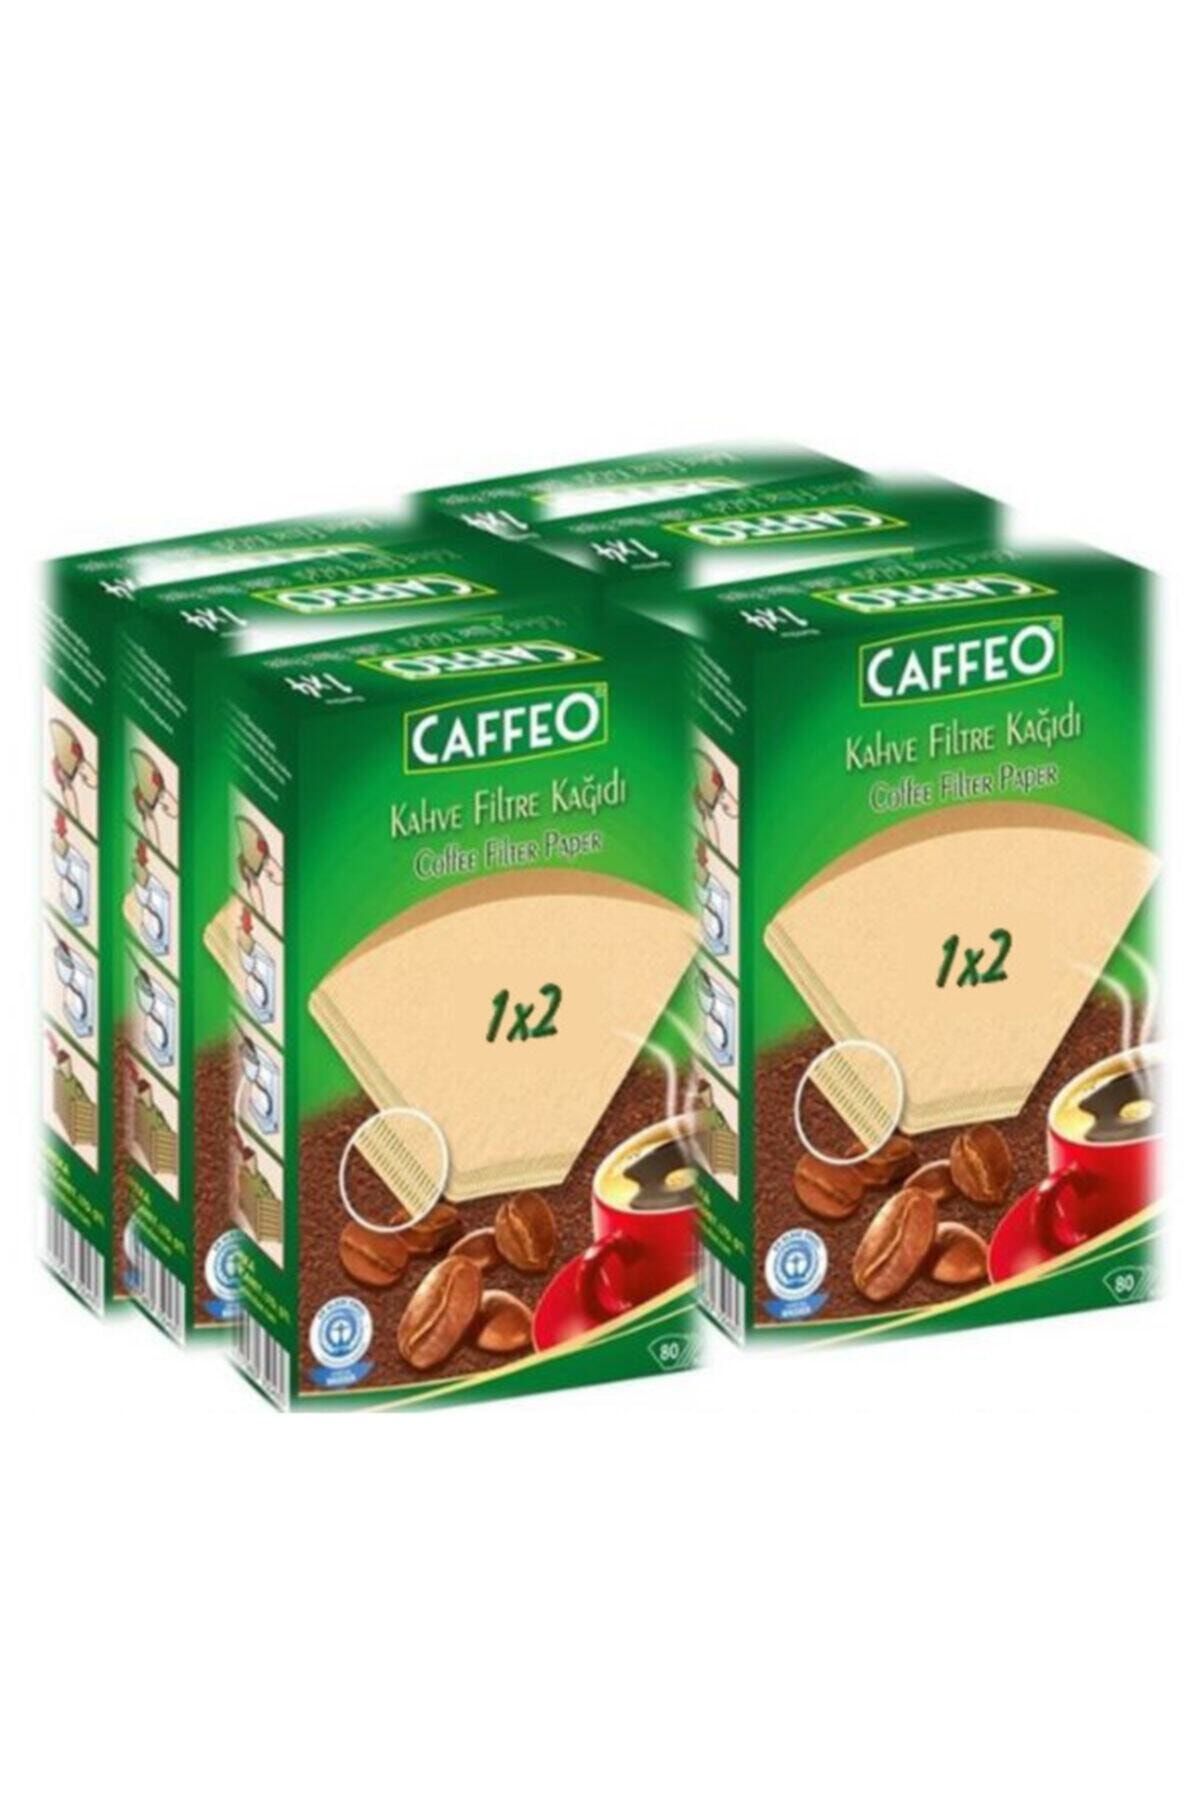 Caffeo Kahve Filtre Kağıdı 1x2 2 Numara 80'li Paket X 6 Adet